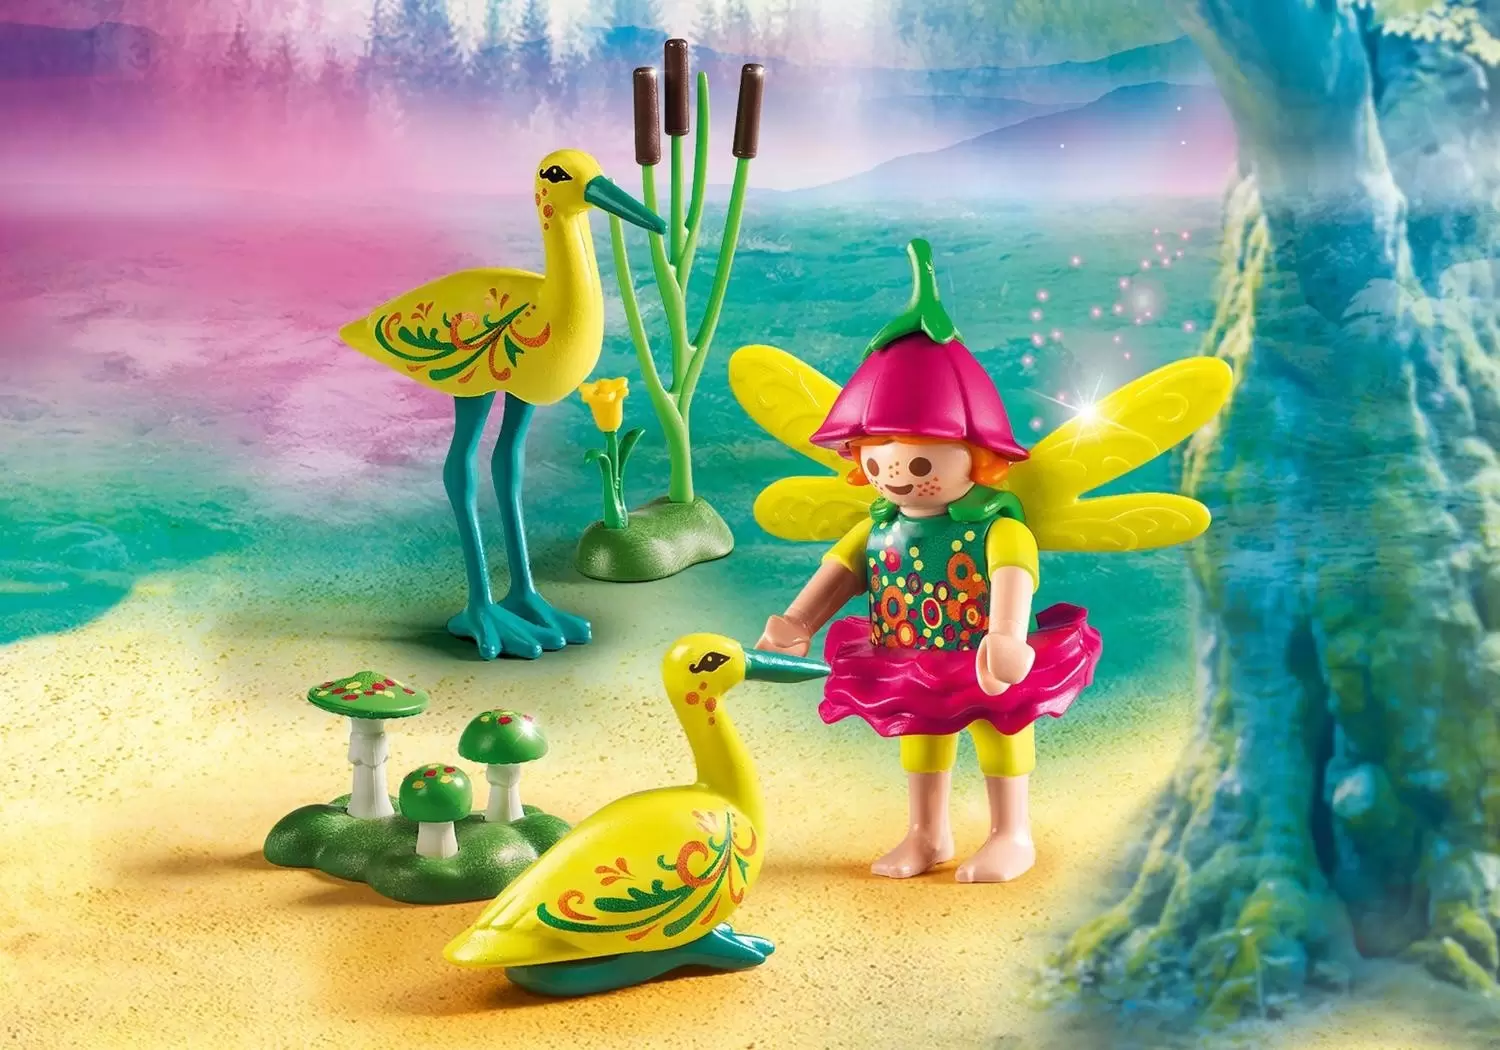 Playmobil Fairies - Fairy Girl with Storks